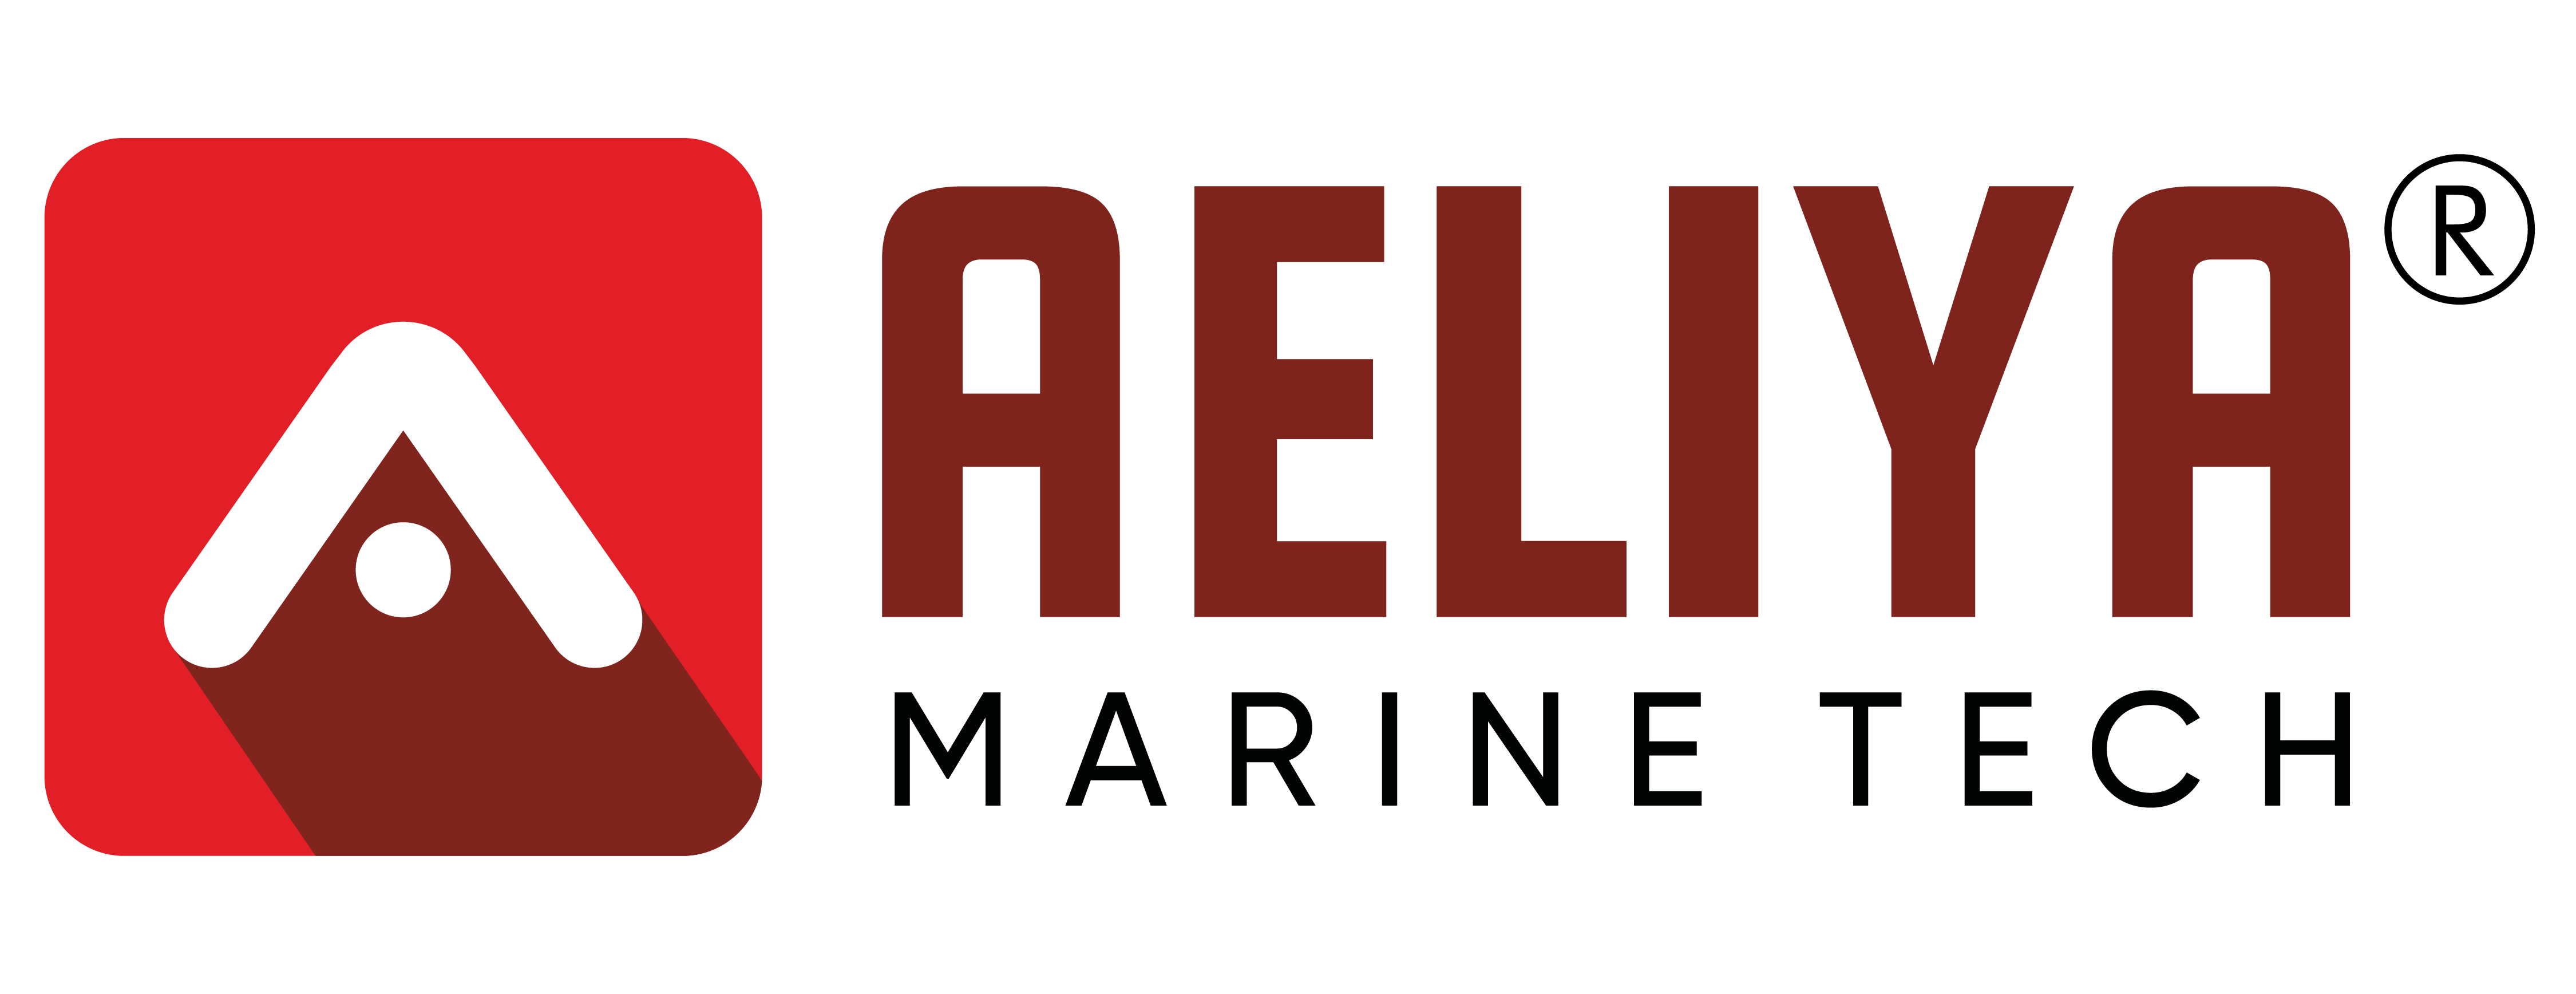 Aeliya Marine